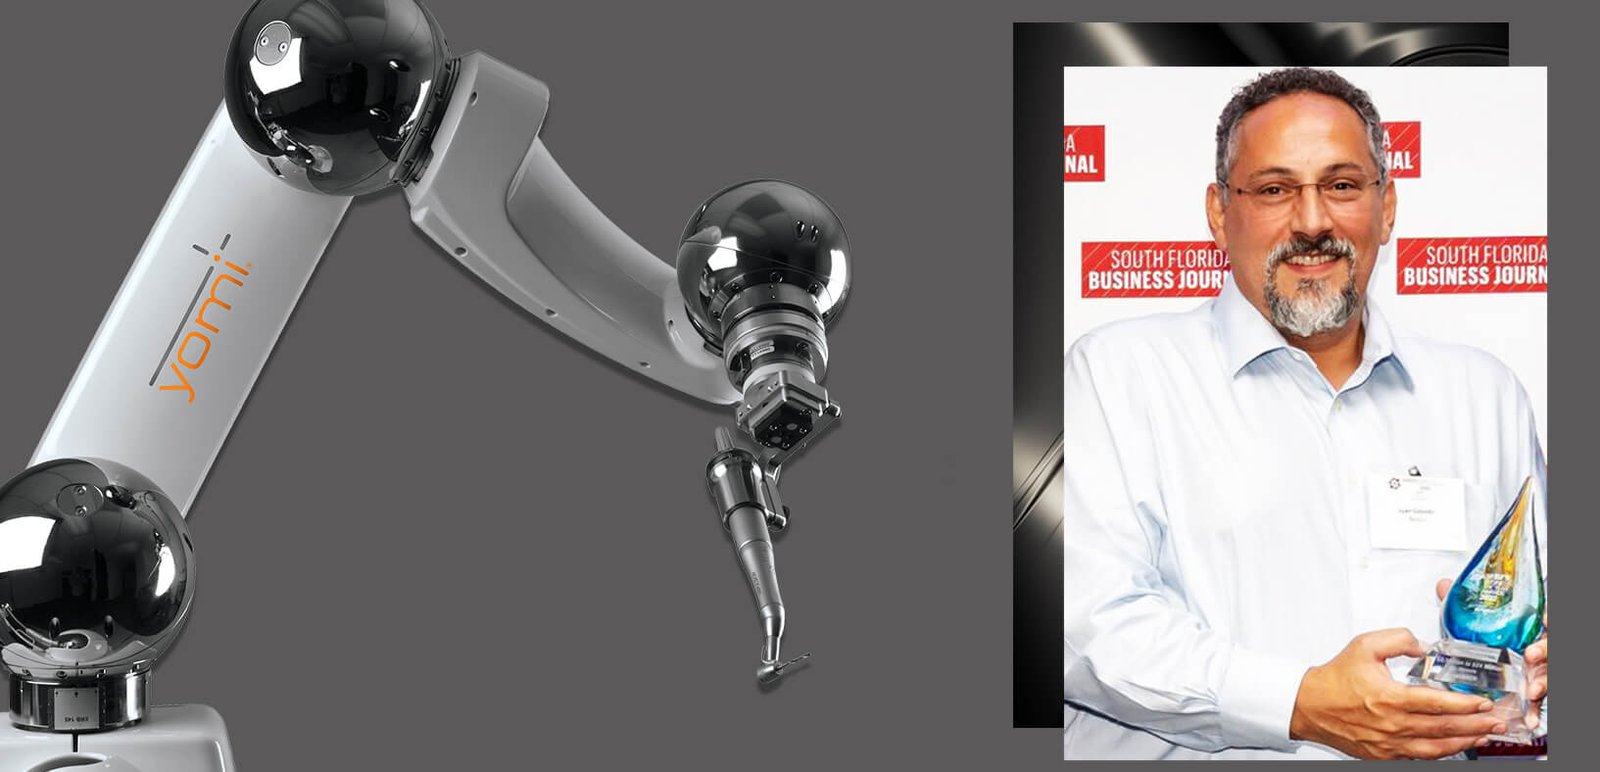 Featured image for “Colombiano es reconocido en Florida por innovación en robótica”